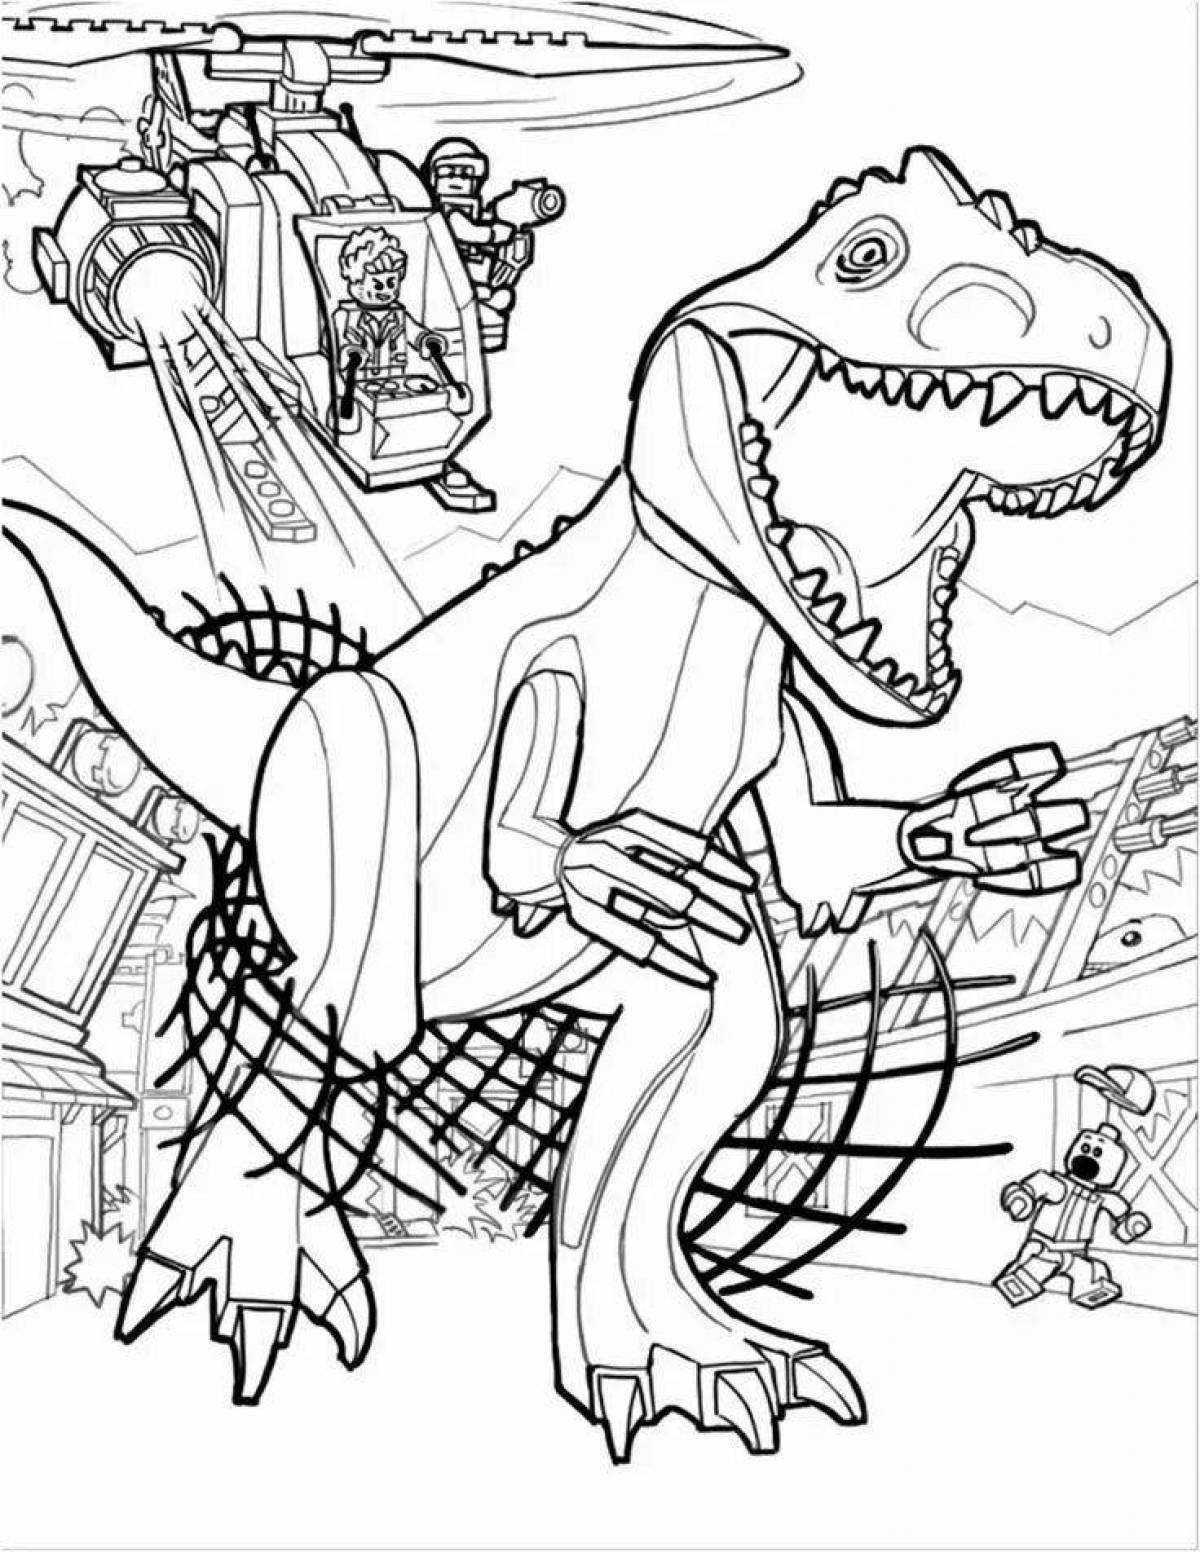 Динозавры мир юрского периода #8